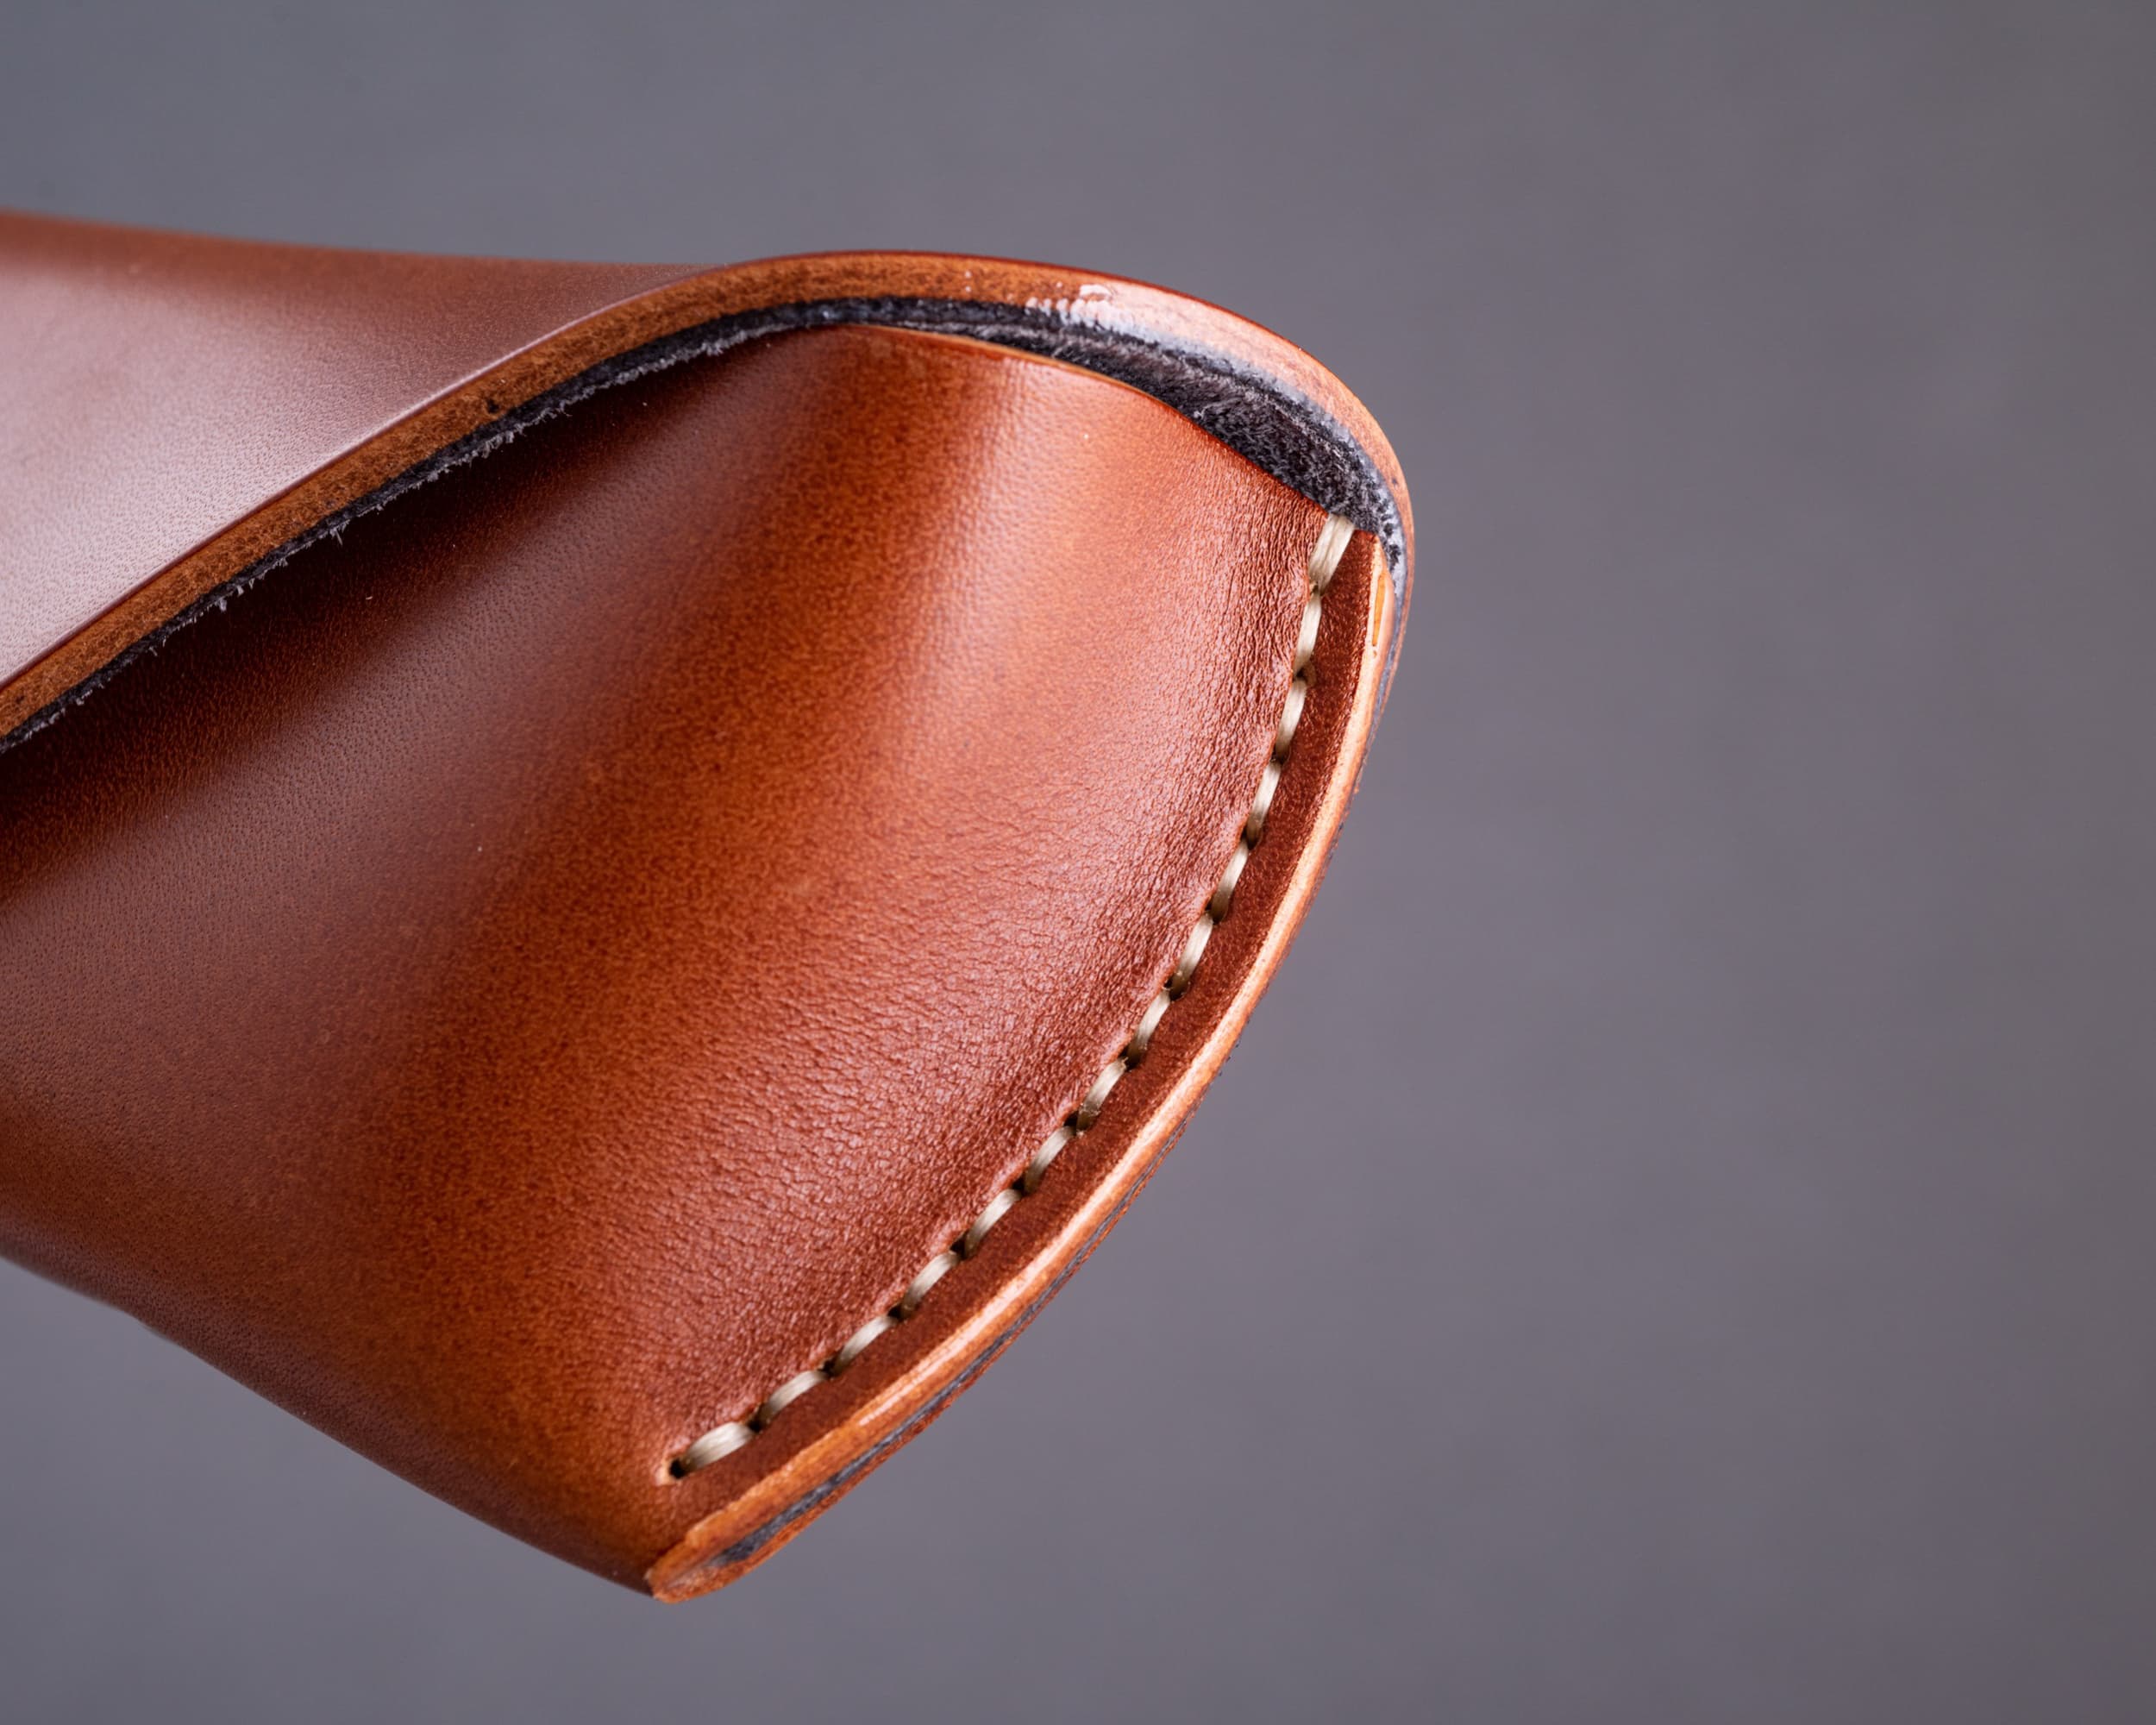 saddle stitching on leather